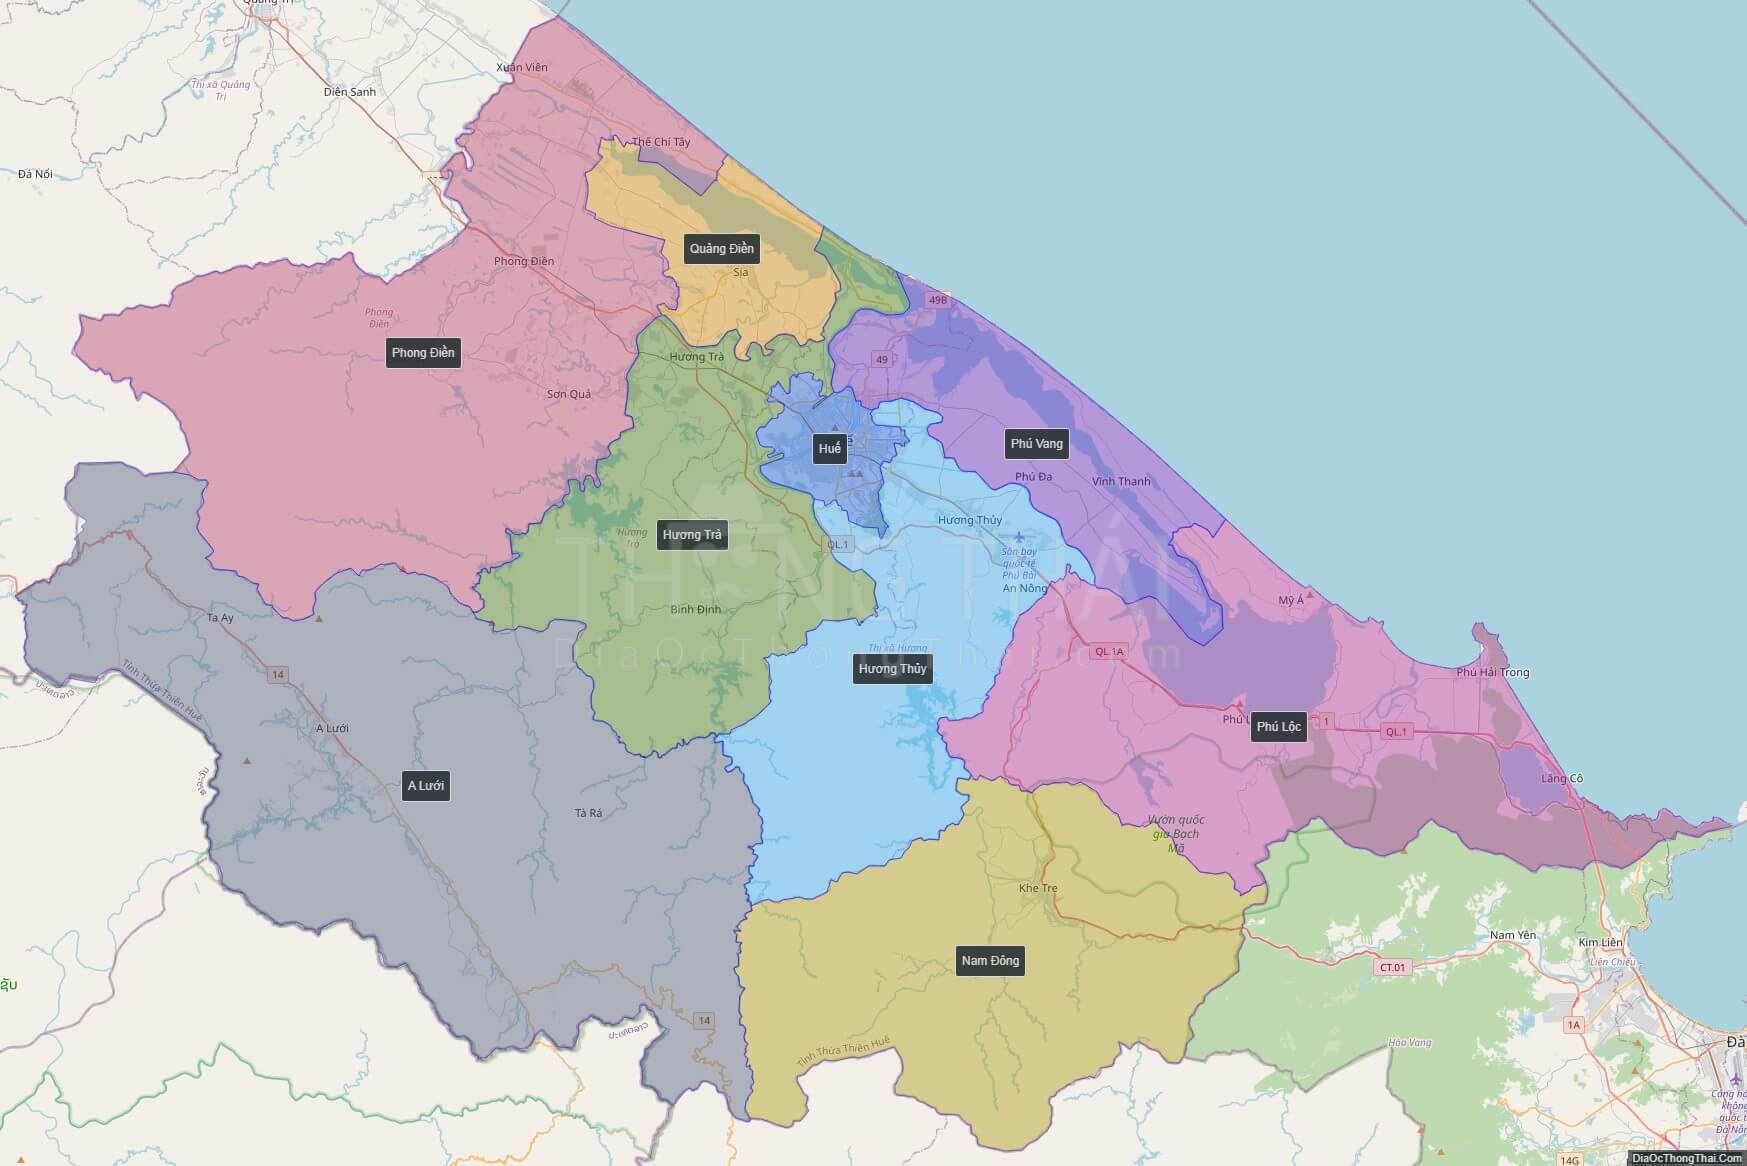 Bản đồ hành chính Thừa Thiên - Huế chi tiết mới nhất 2024 sẽ giúp bạn có cái nhìn toàn cảnh và chính xác nhất về địa phận của tỉnh Thừa Thiên - Huế. Với thông tin được cập nhật đầy đủ và chi tiết, bạn có thể dễ dàng tìm kiếm các địa điểm, địa danh quan trọng trong khu vực.